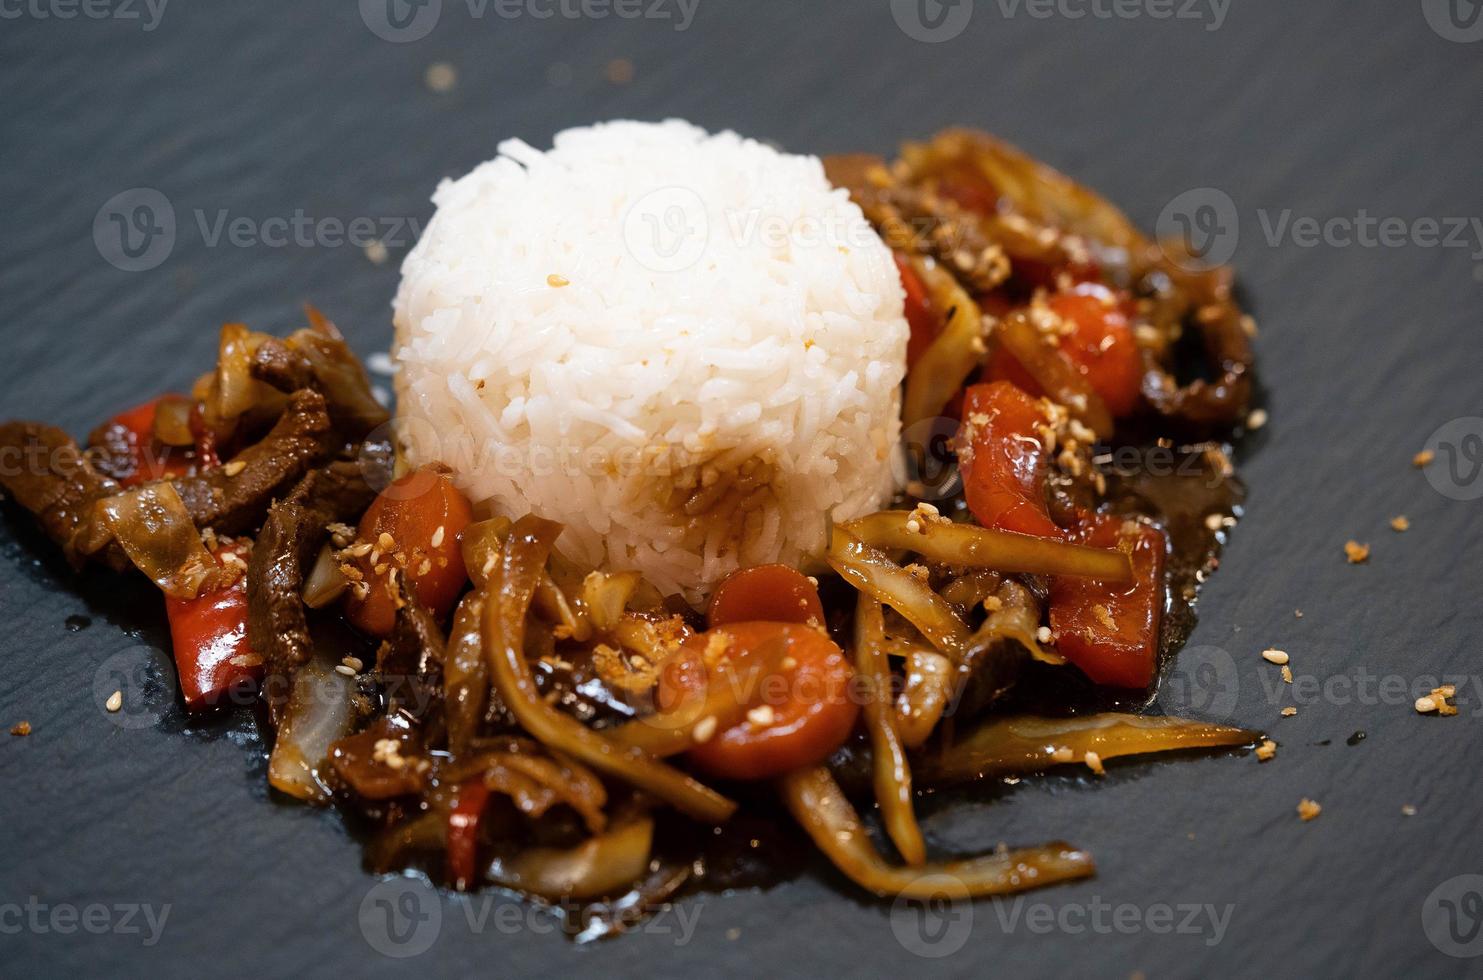 asiatisk kök kryddad curry med grönsaker och ris foto